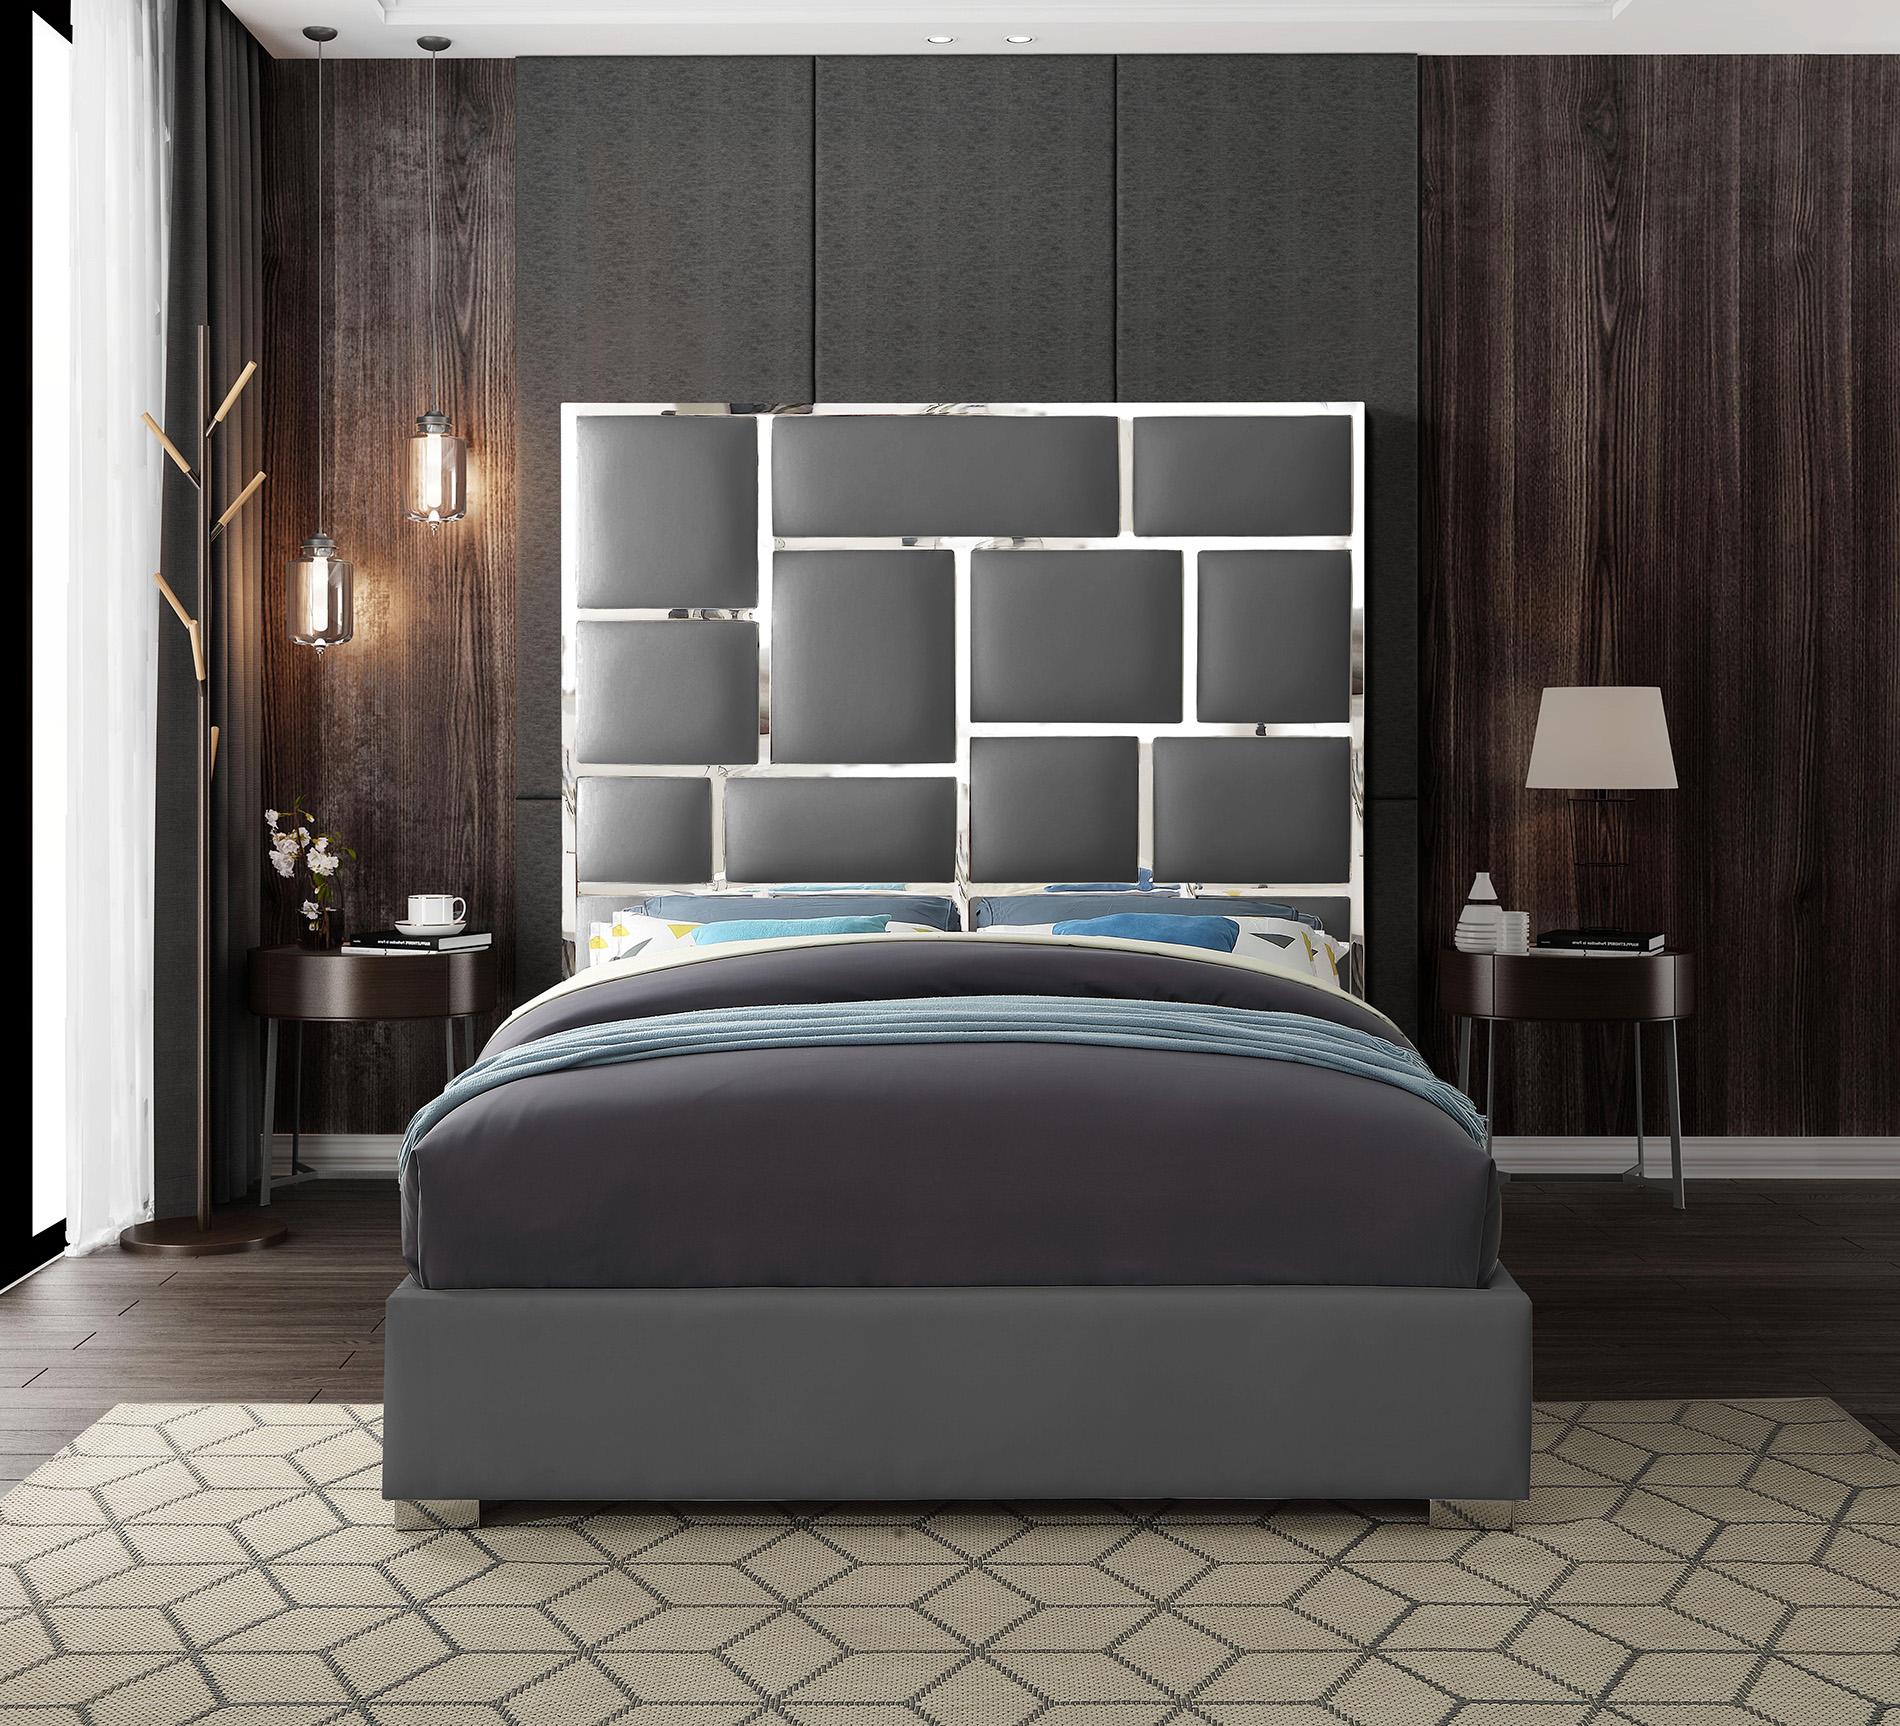 

    
Meridian Furniture MILAN Grey-Q Platform Bed Chrome/Gray MilanGrey-Q
